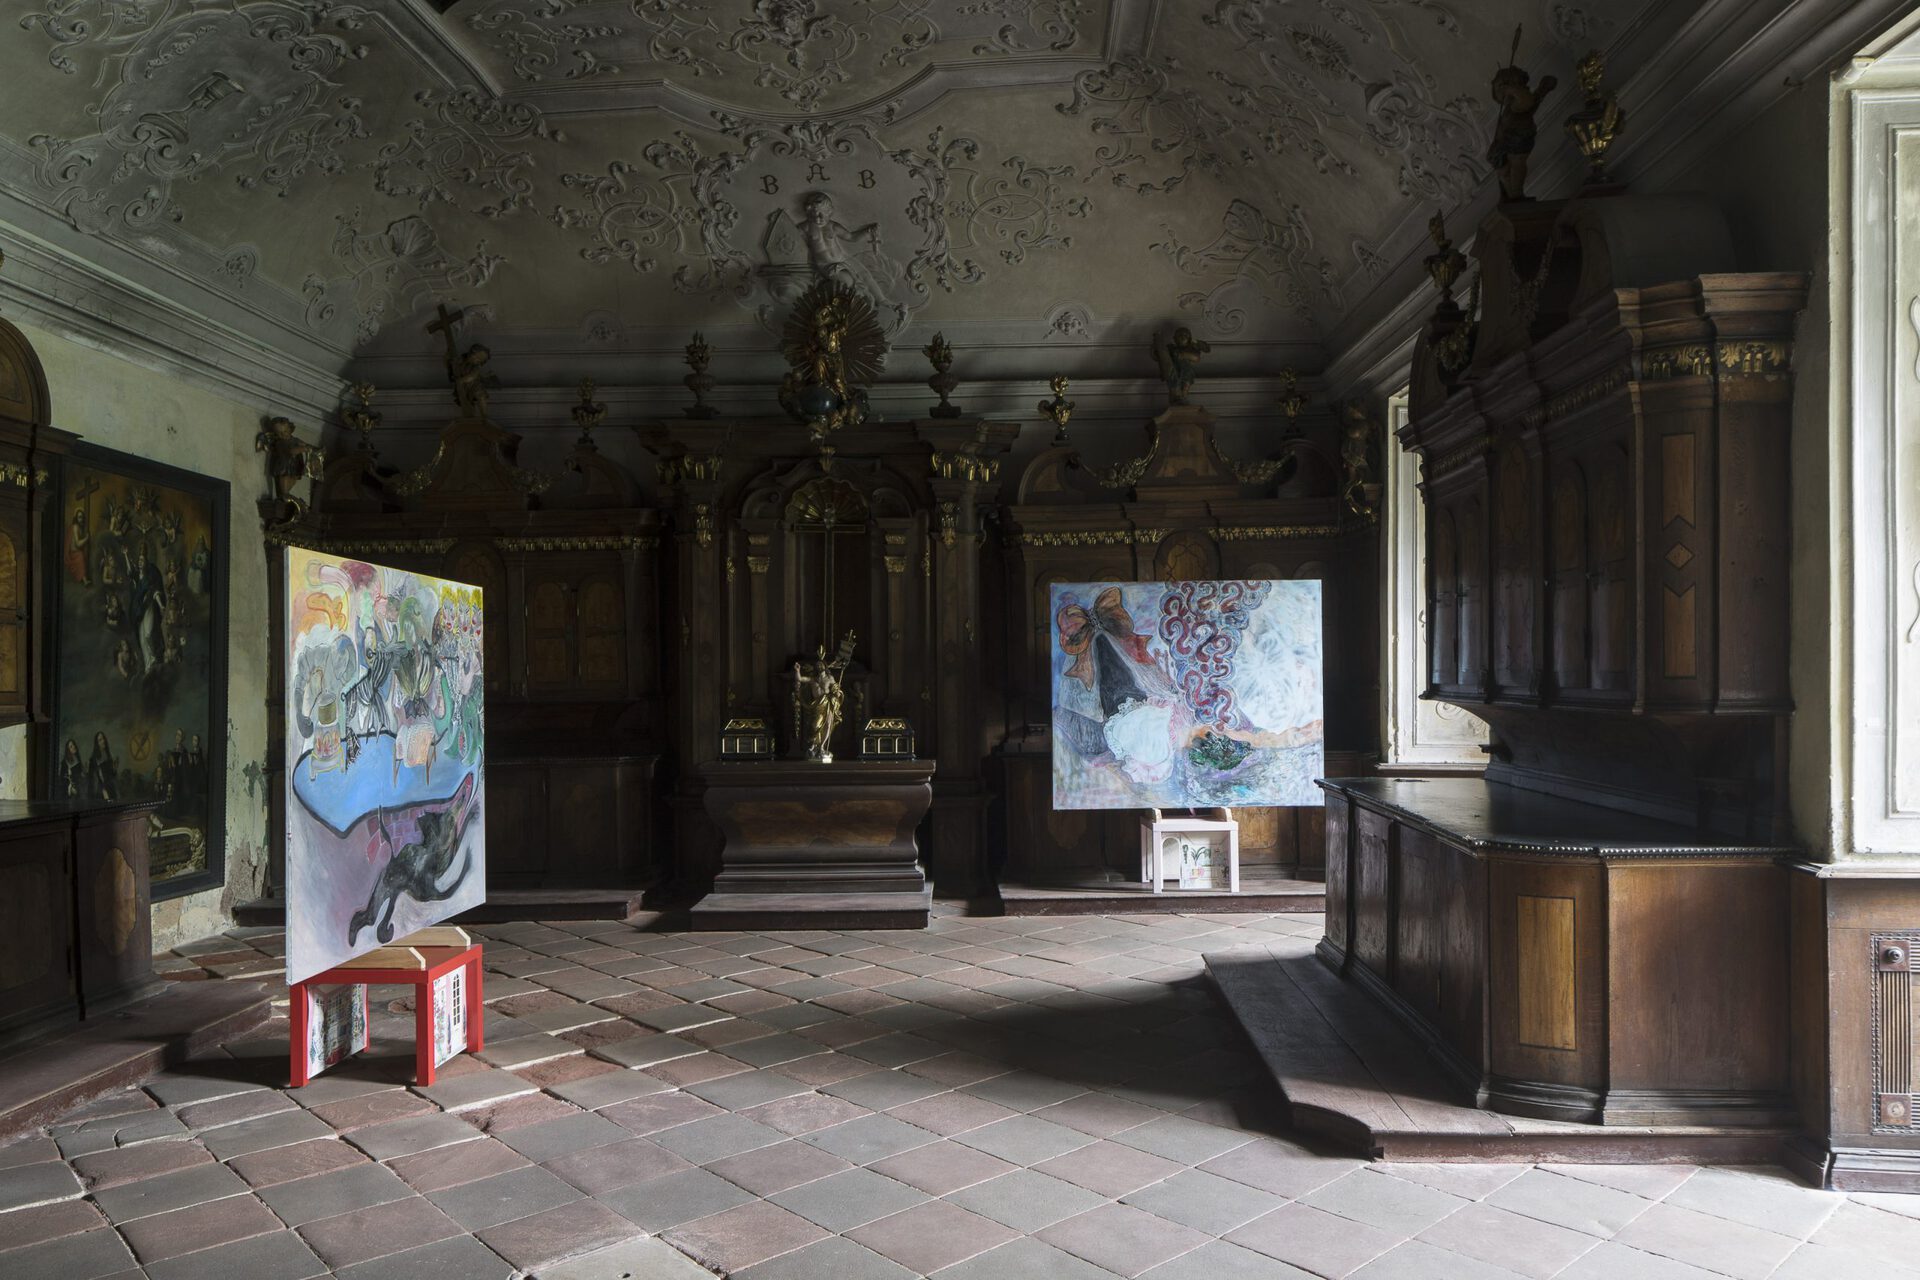 Ora et lege, Kamilla Bischof, exhibition view, Broumov Monastery, 2021